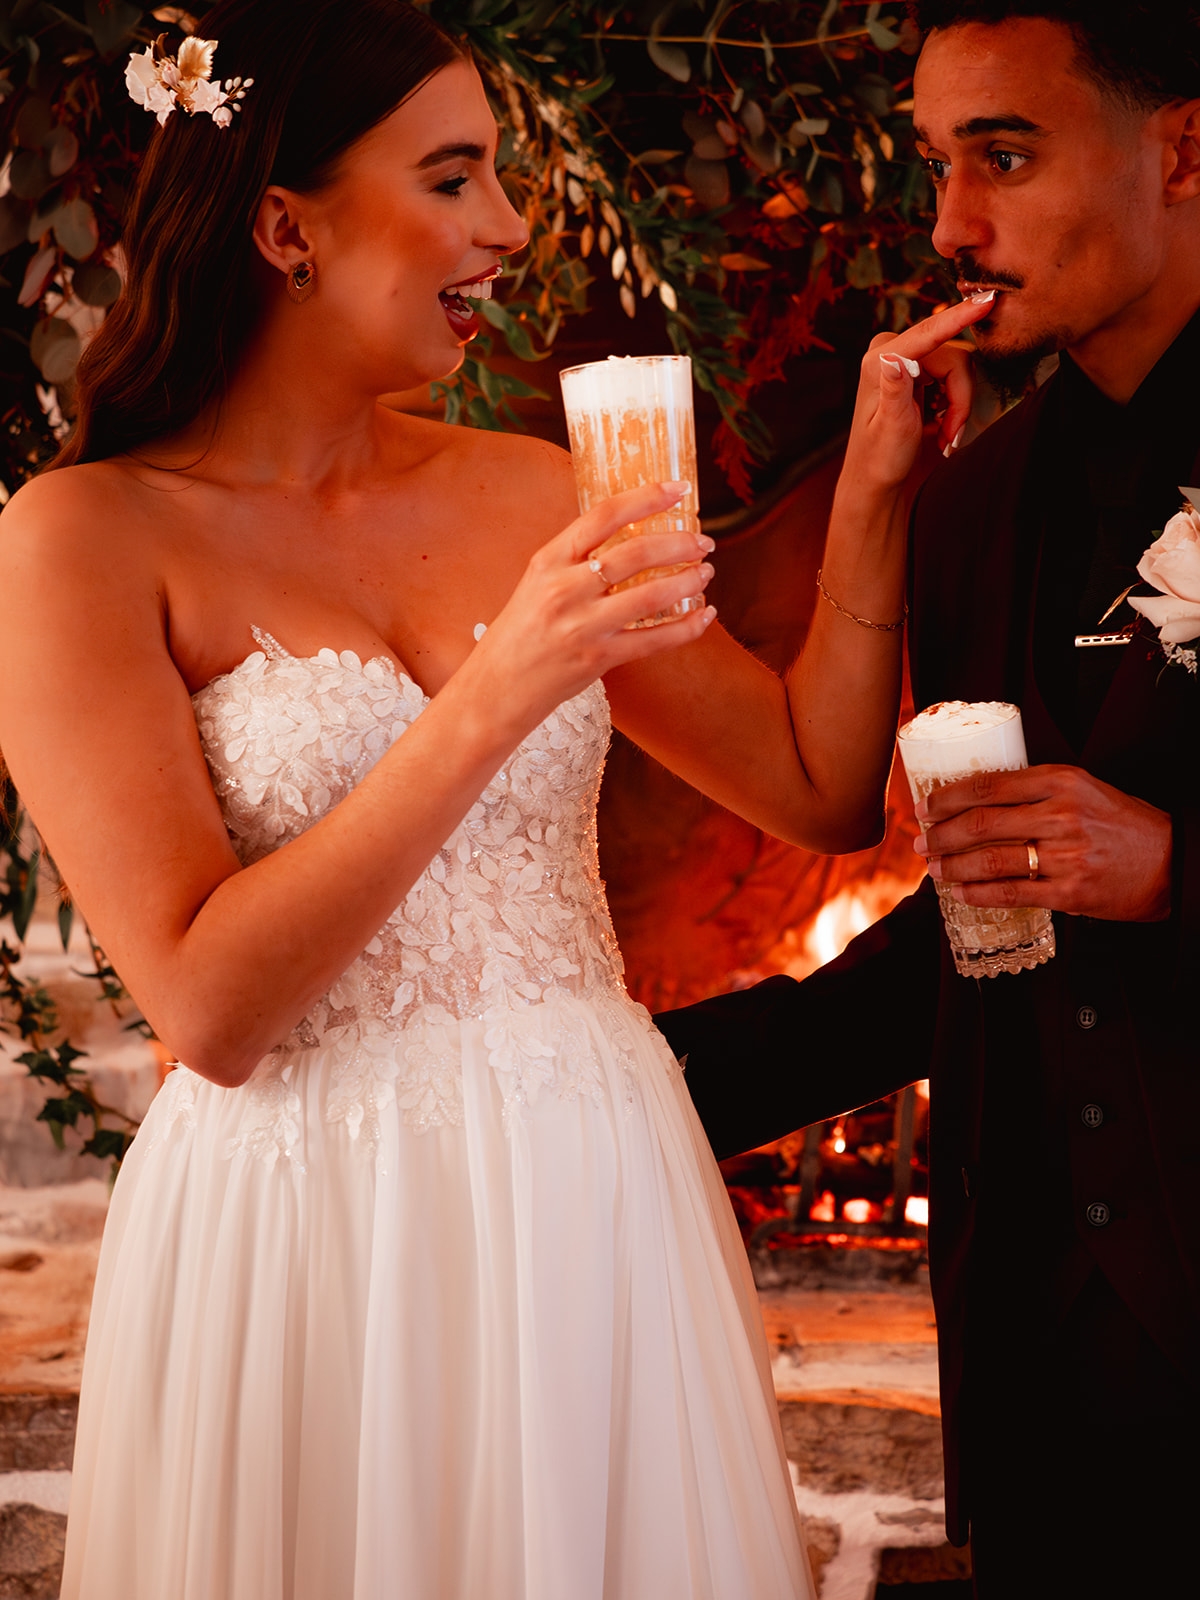 Les deux mariés boivent leur bière au beurre pendant leur cérémonie de mariage